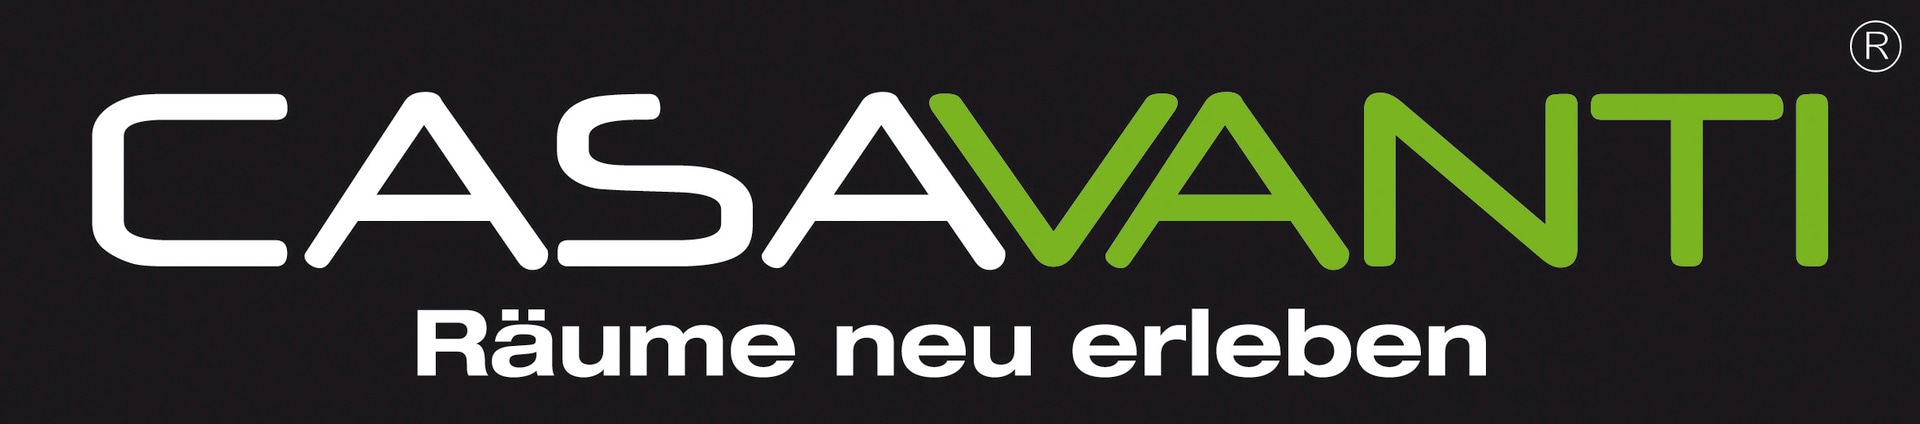 CASAVANTI-logo